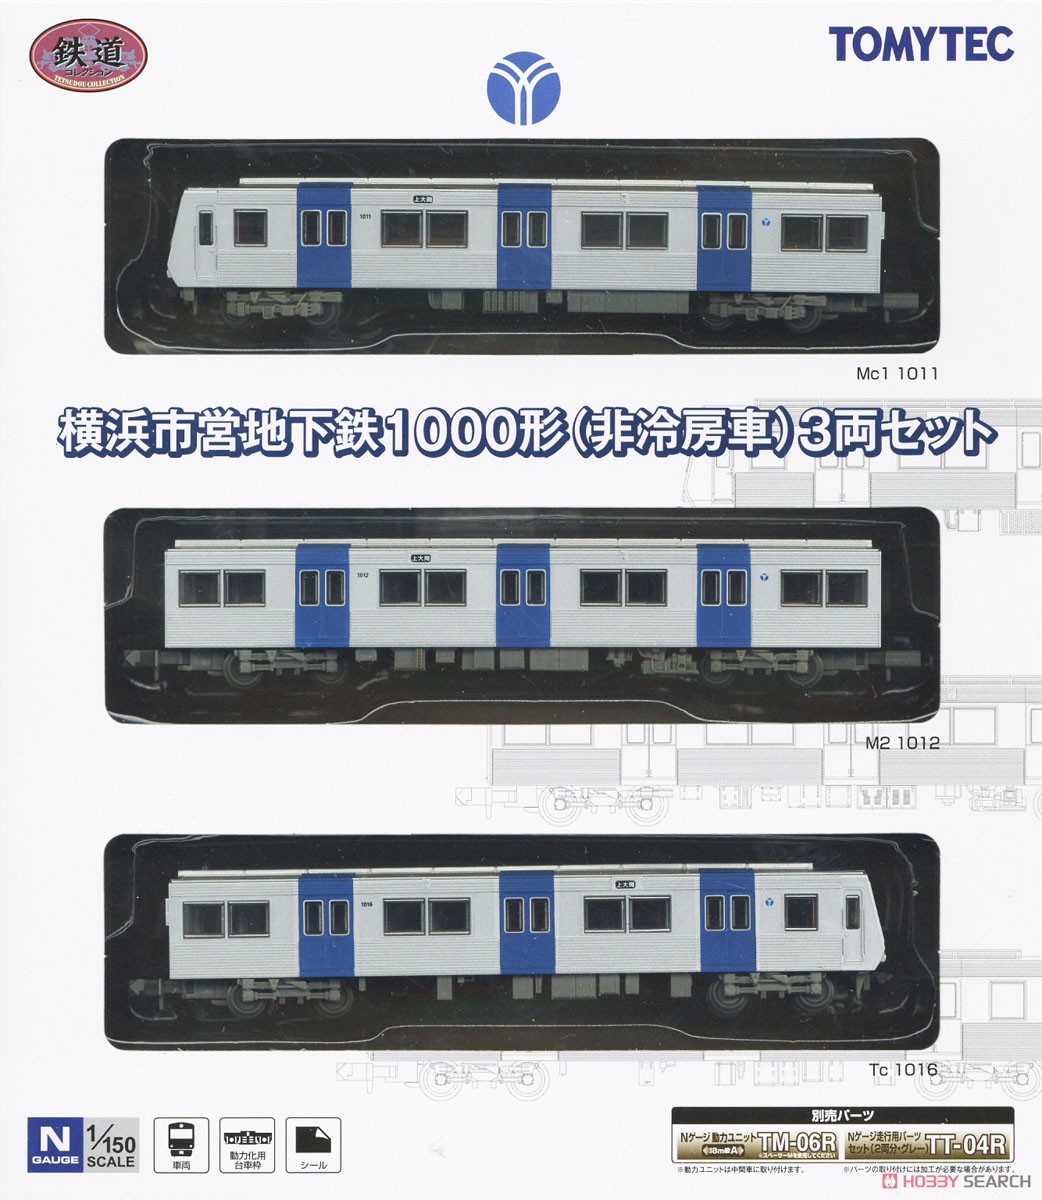 鉄道コレクション 横浜市営地下鉄 1000形 (非冷房車) 3両セット (3両セット) (鉄道模型) パッケージ1